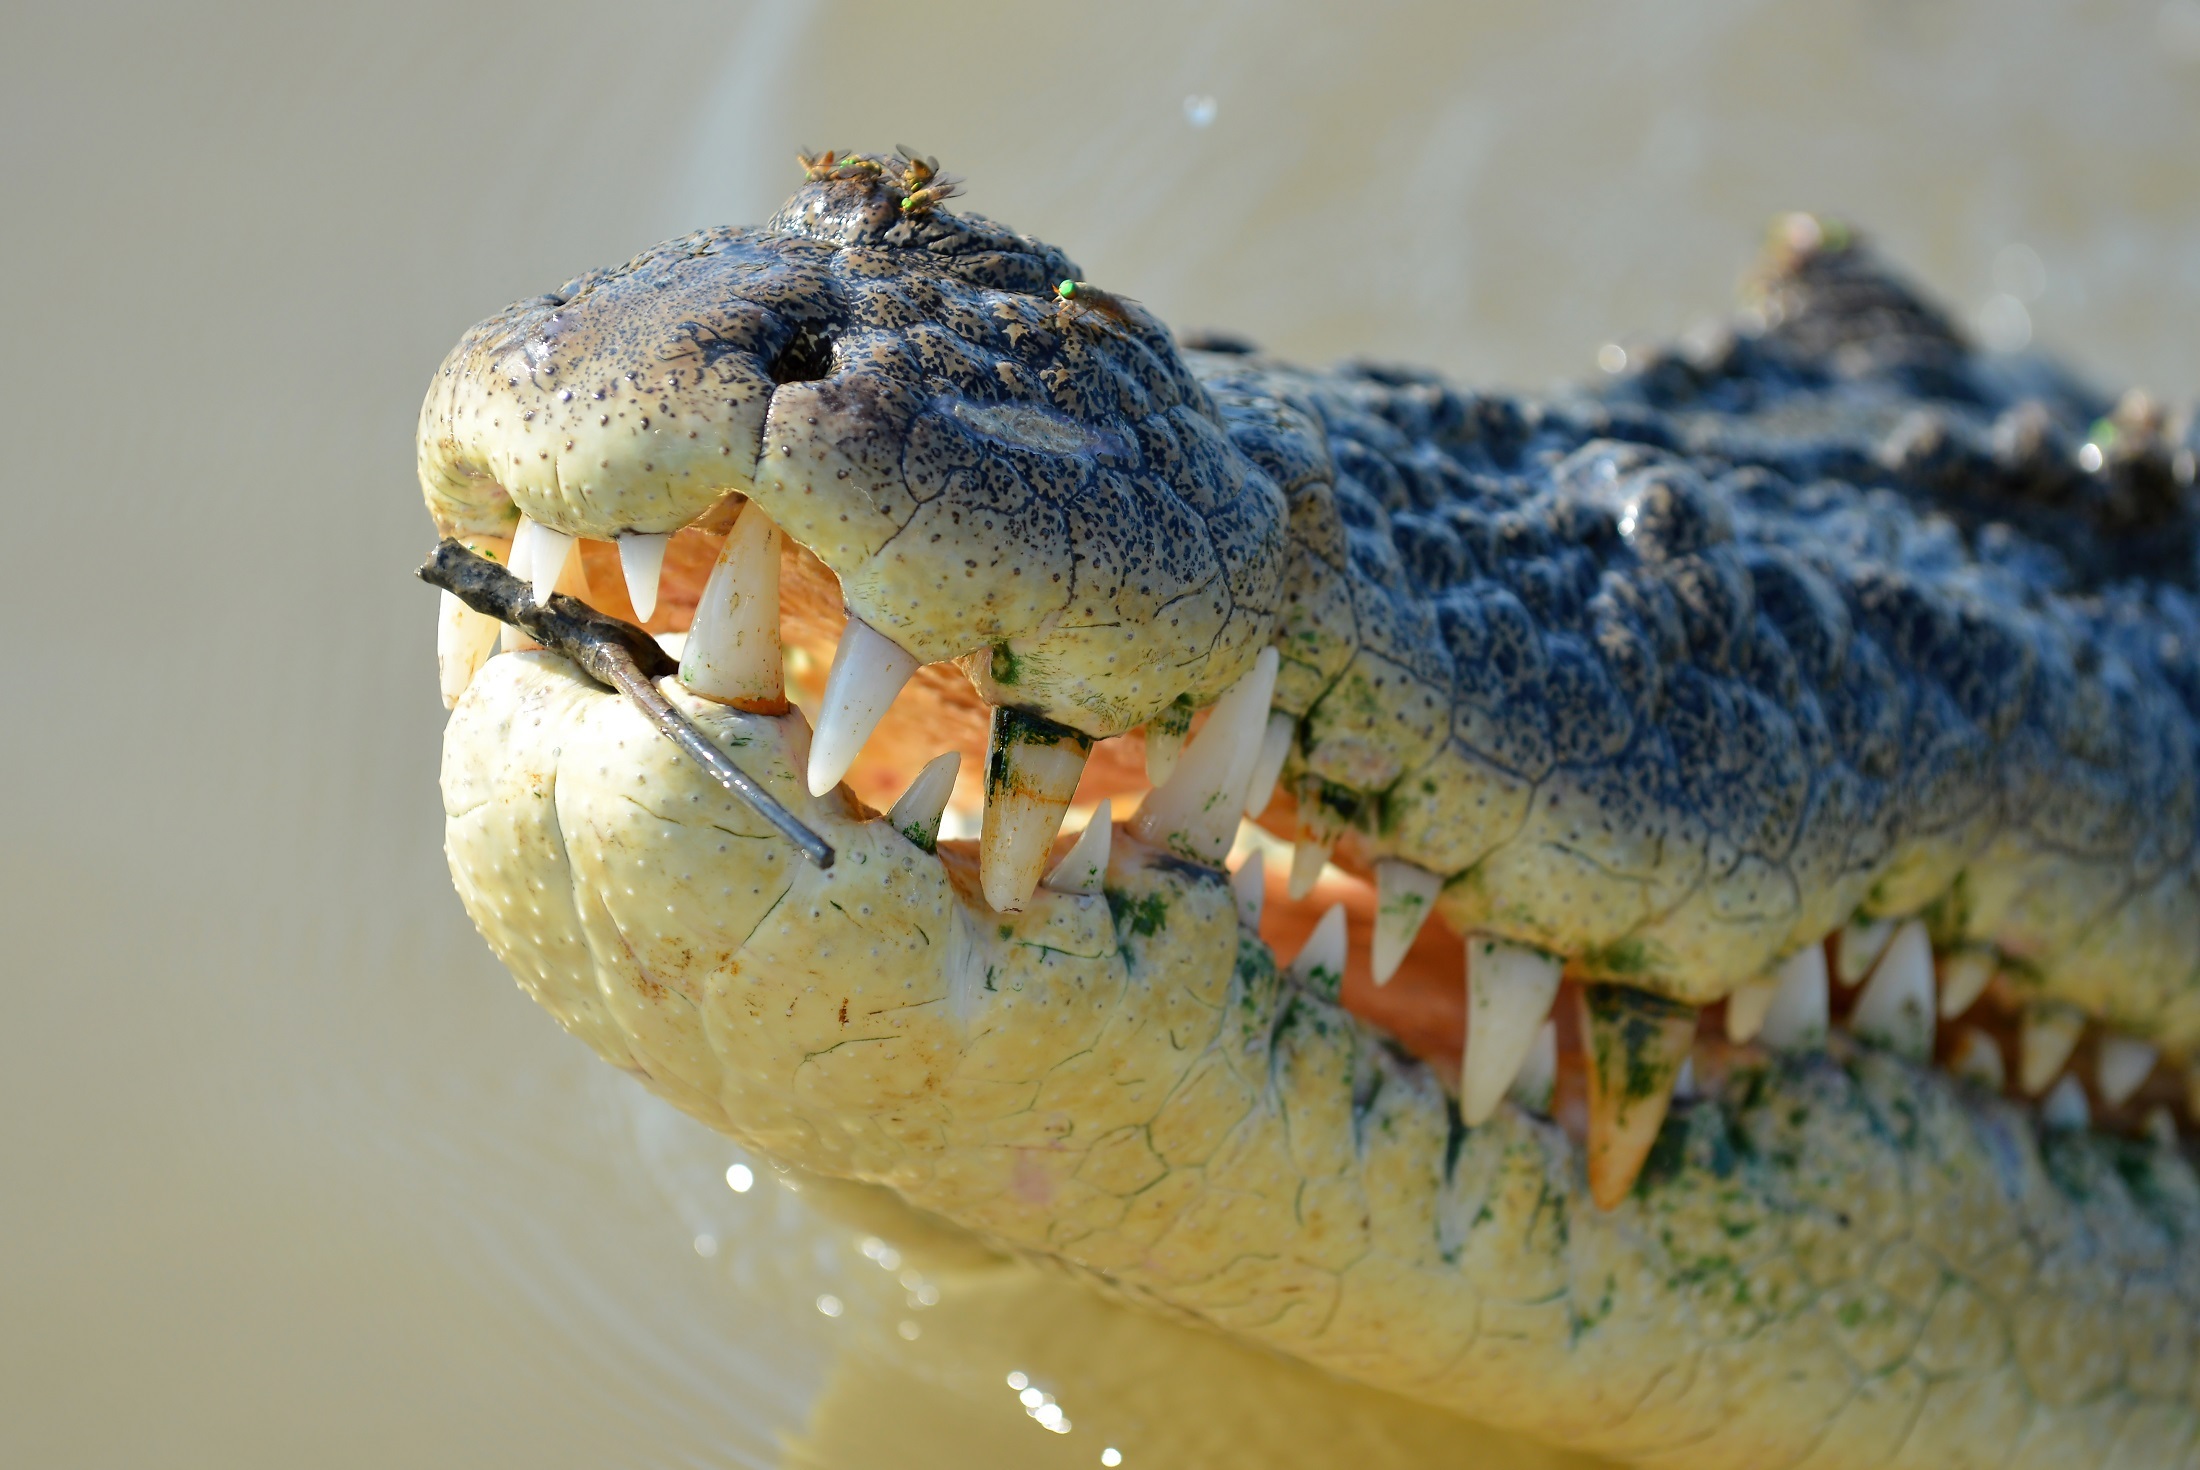 Saltwater croc photo